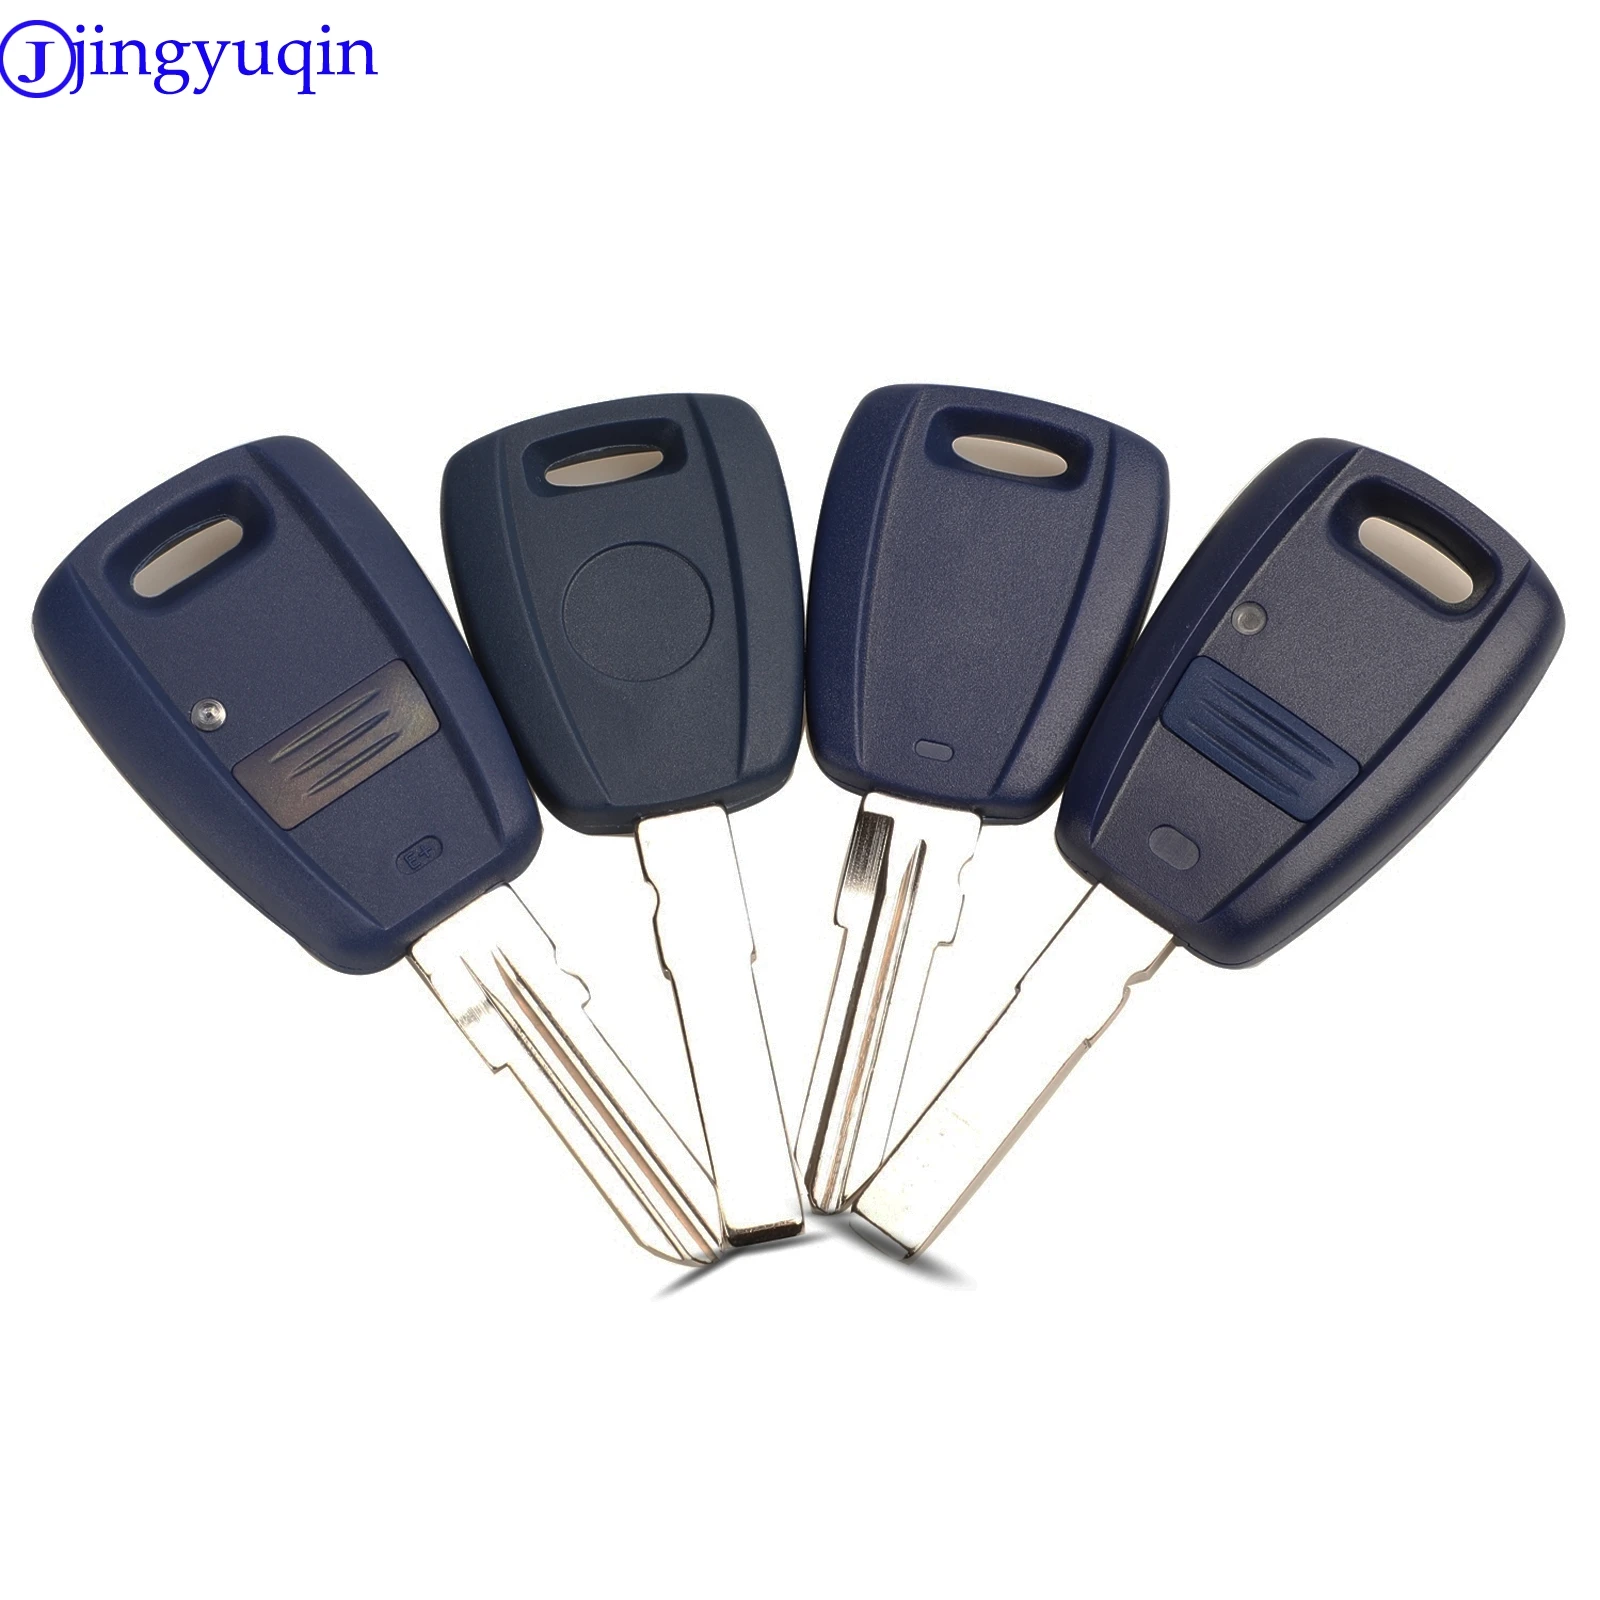 

jingyuqin Keyless Entry Key Fob Styling For Fiat Punto Doblo Bravo Key Shell Case Housing Cover